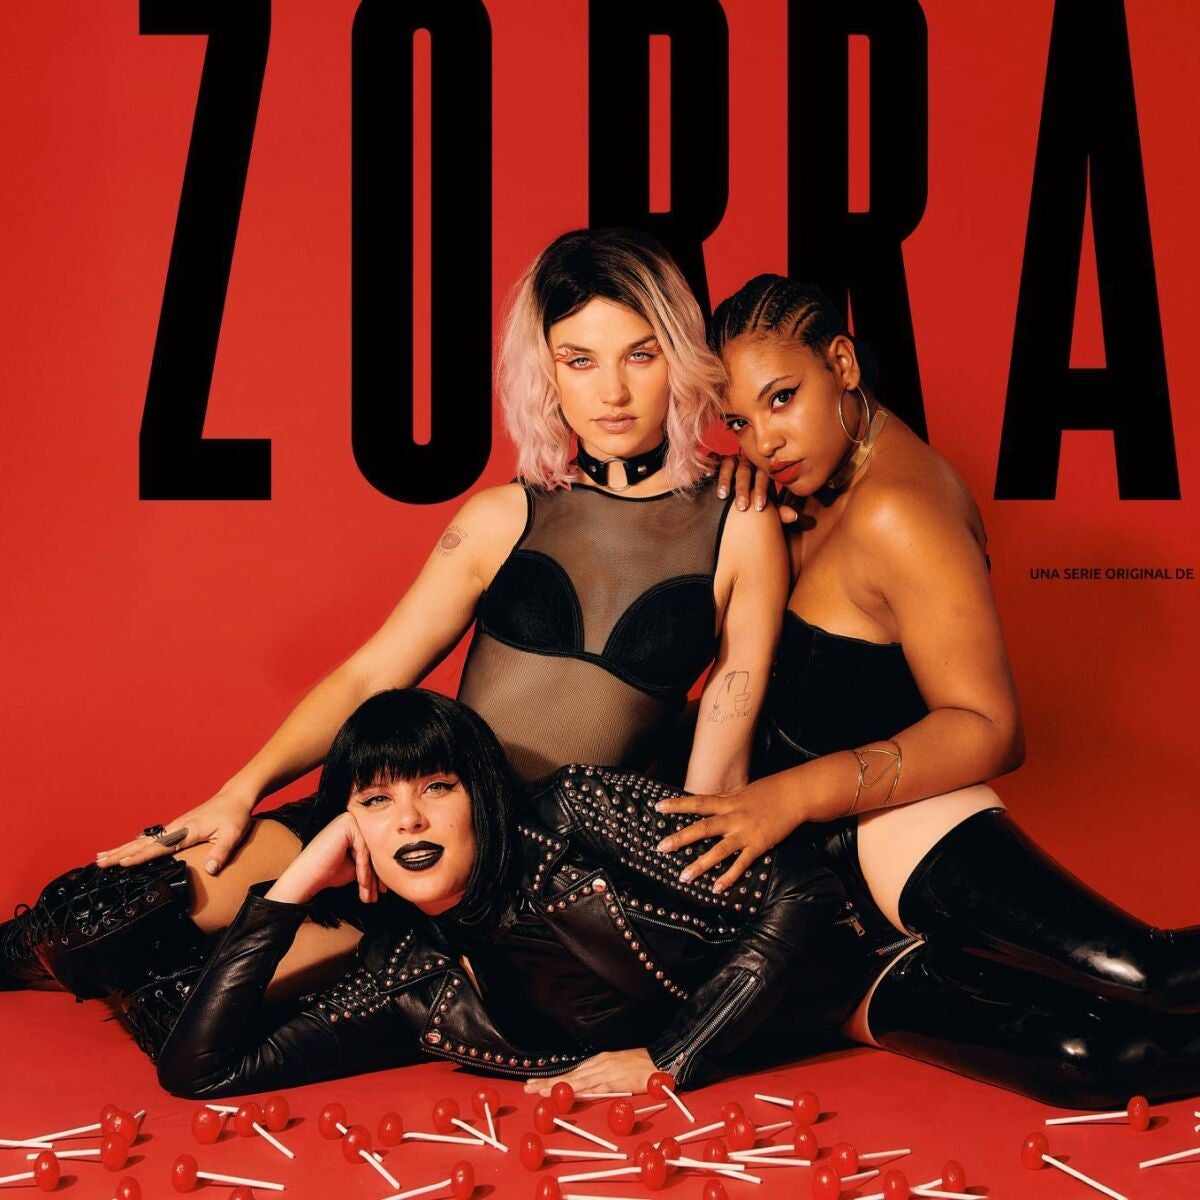 Así es Zorras, la serie con Andrea Ros, Tai Fati y Mirela Balic sobre la revolución sexual de tres mujeres que llega en verano